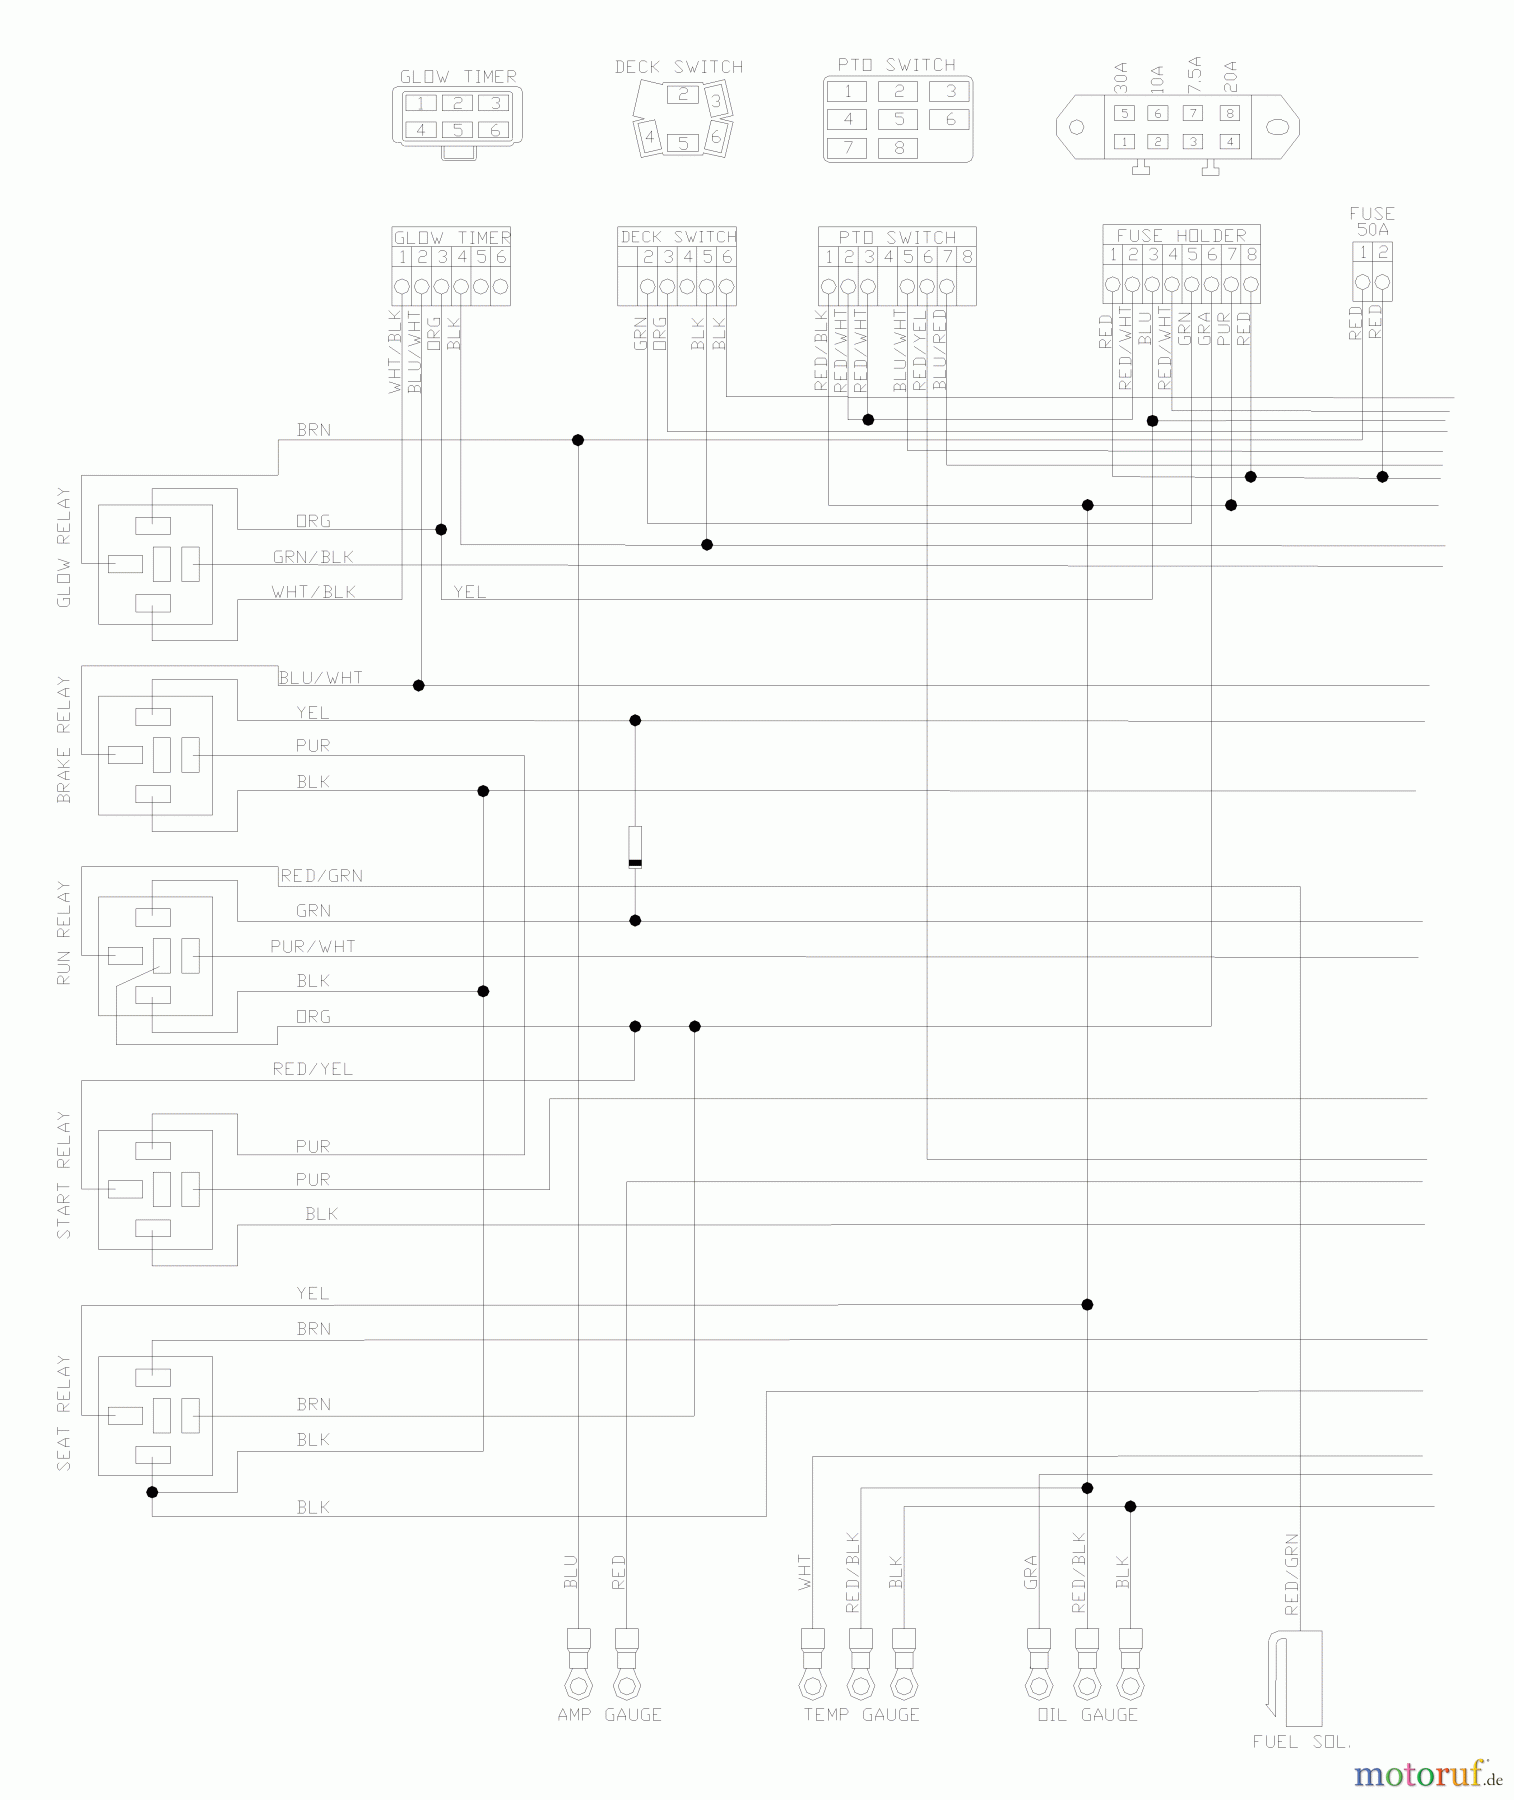  Husqvarna Nullwendekreismäher, Zero-Turn BZ 6127 D (968999218) - Husqvarna Zero-Turn Mower (2004-11 & After) (SN: 033600000 & Up) Wiring Schematic (Part 1)